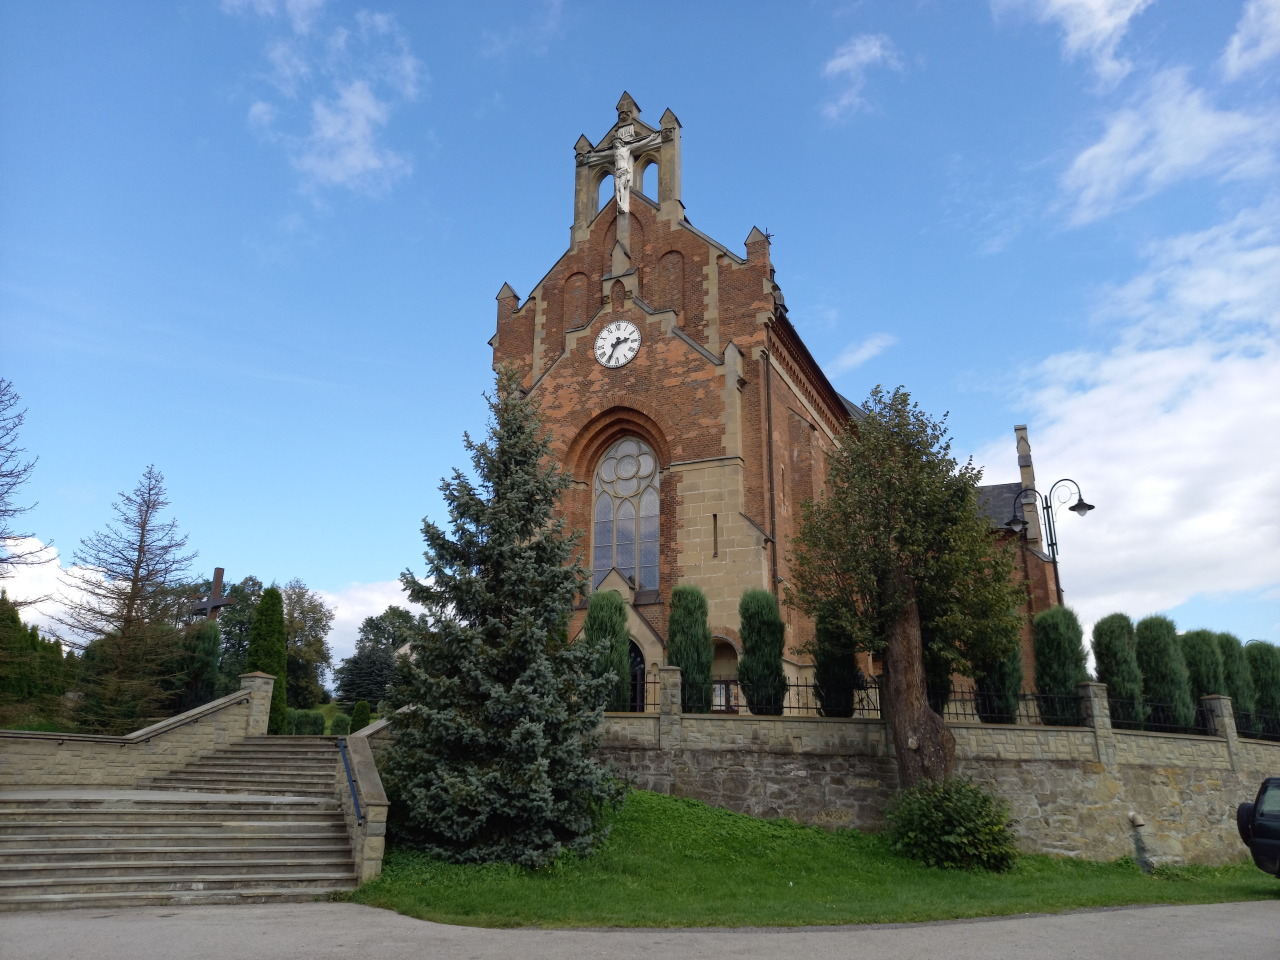 St. Nicolas Church from 1906, Przyszowa, Poland - 02.09.2021Bigger pic #st. nicholas #church#architecture#przyszowa#poland#polska#beskidy#beskid#beskid wyspowy#samsung#sky#blues sky#photography